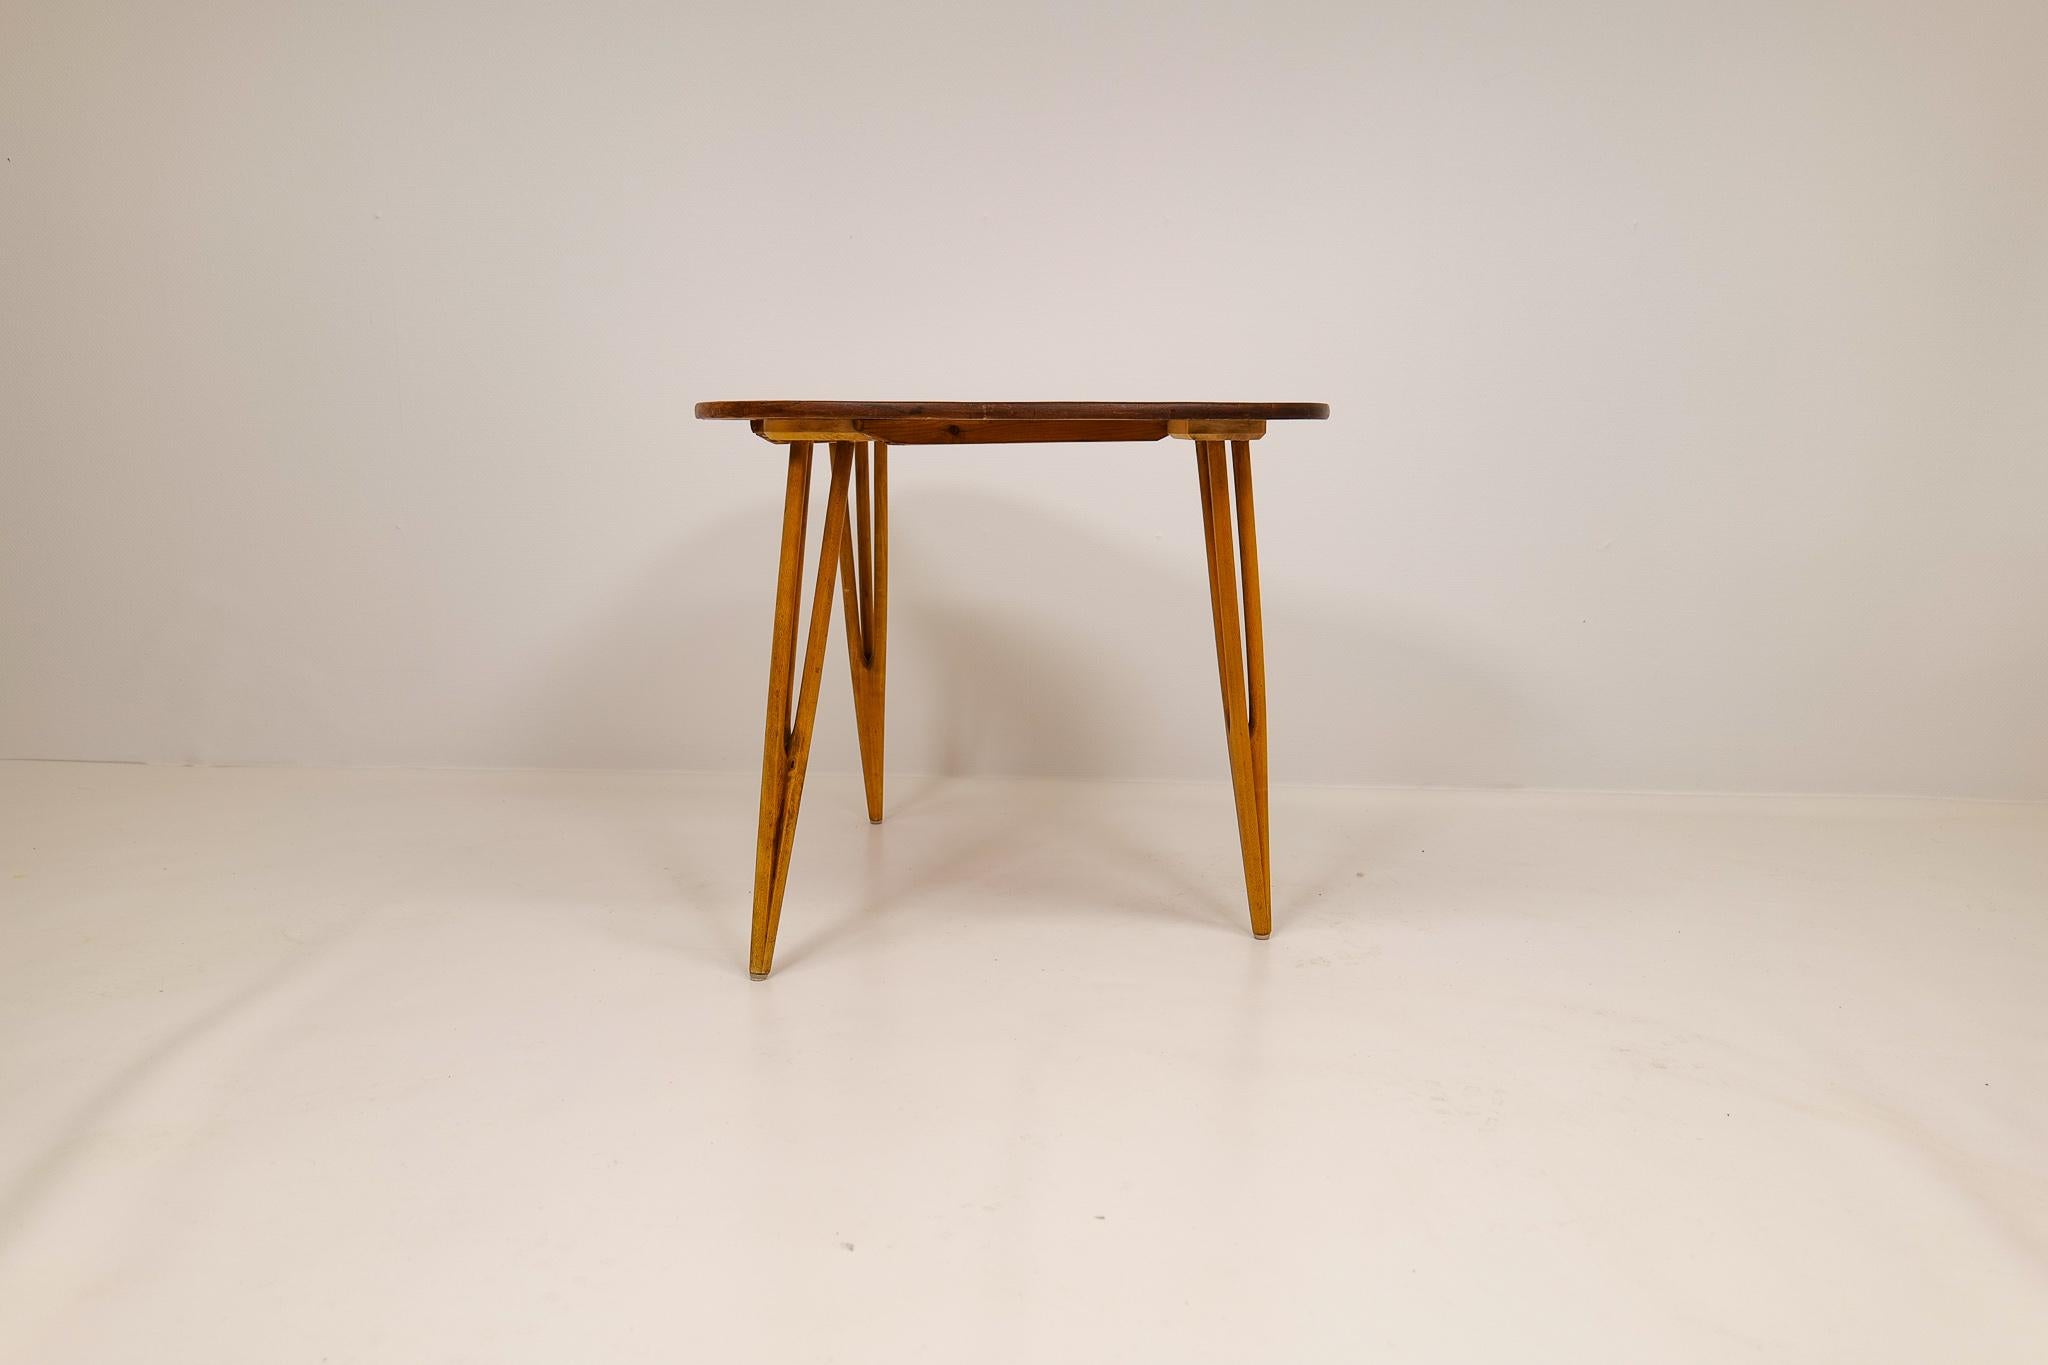 Magnifique table basse en forme de rein, fabriquée en pin. Celui-ci est une pièce unique. 

État vintage, usure conforme à l'âge et à l'utilisation. 

Dimensions. H 60 D 50 W 80 cm.
 